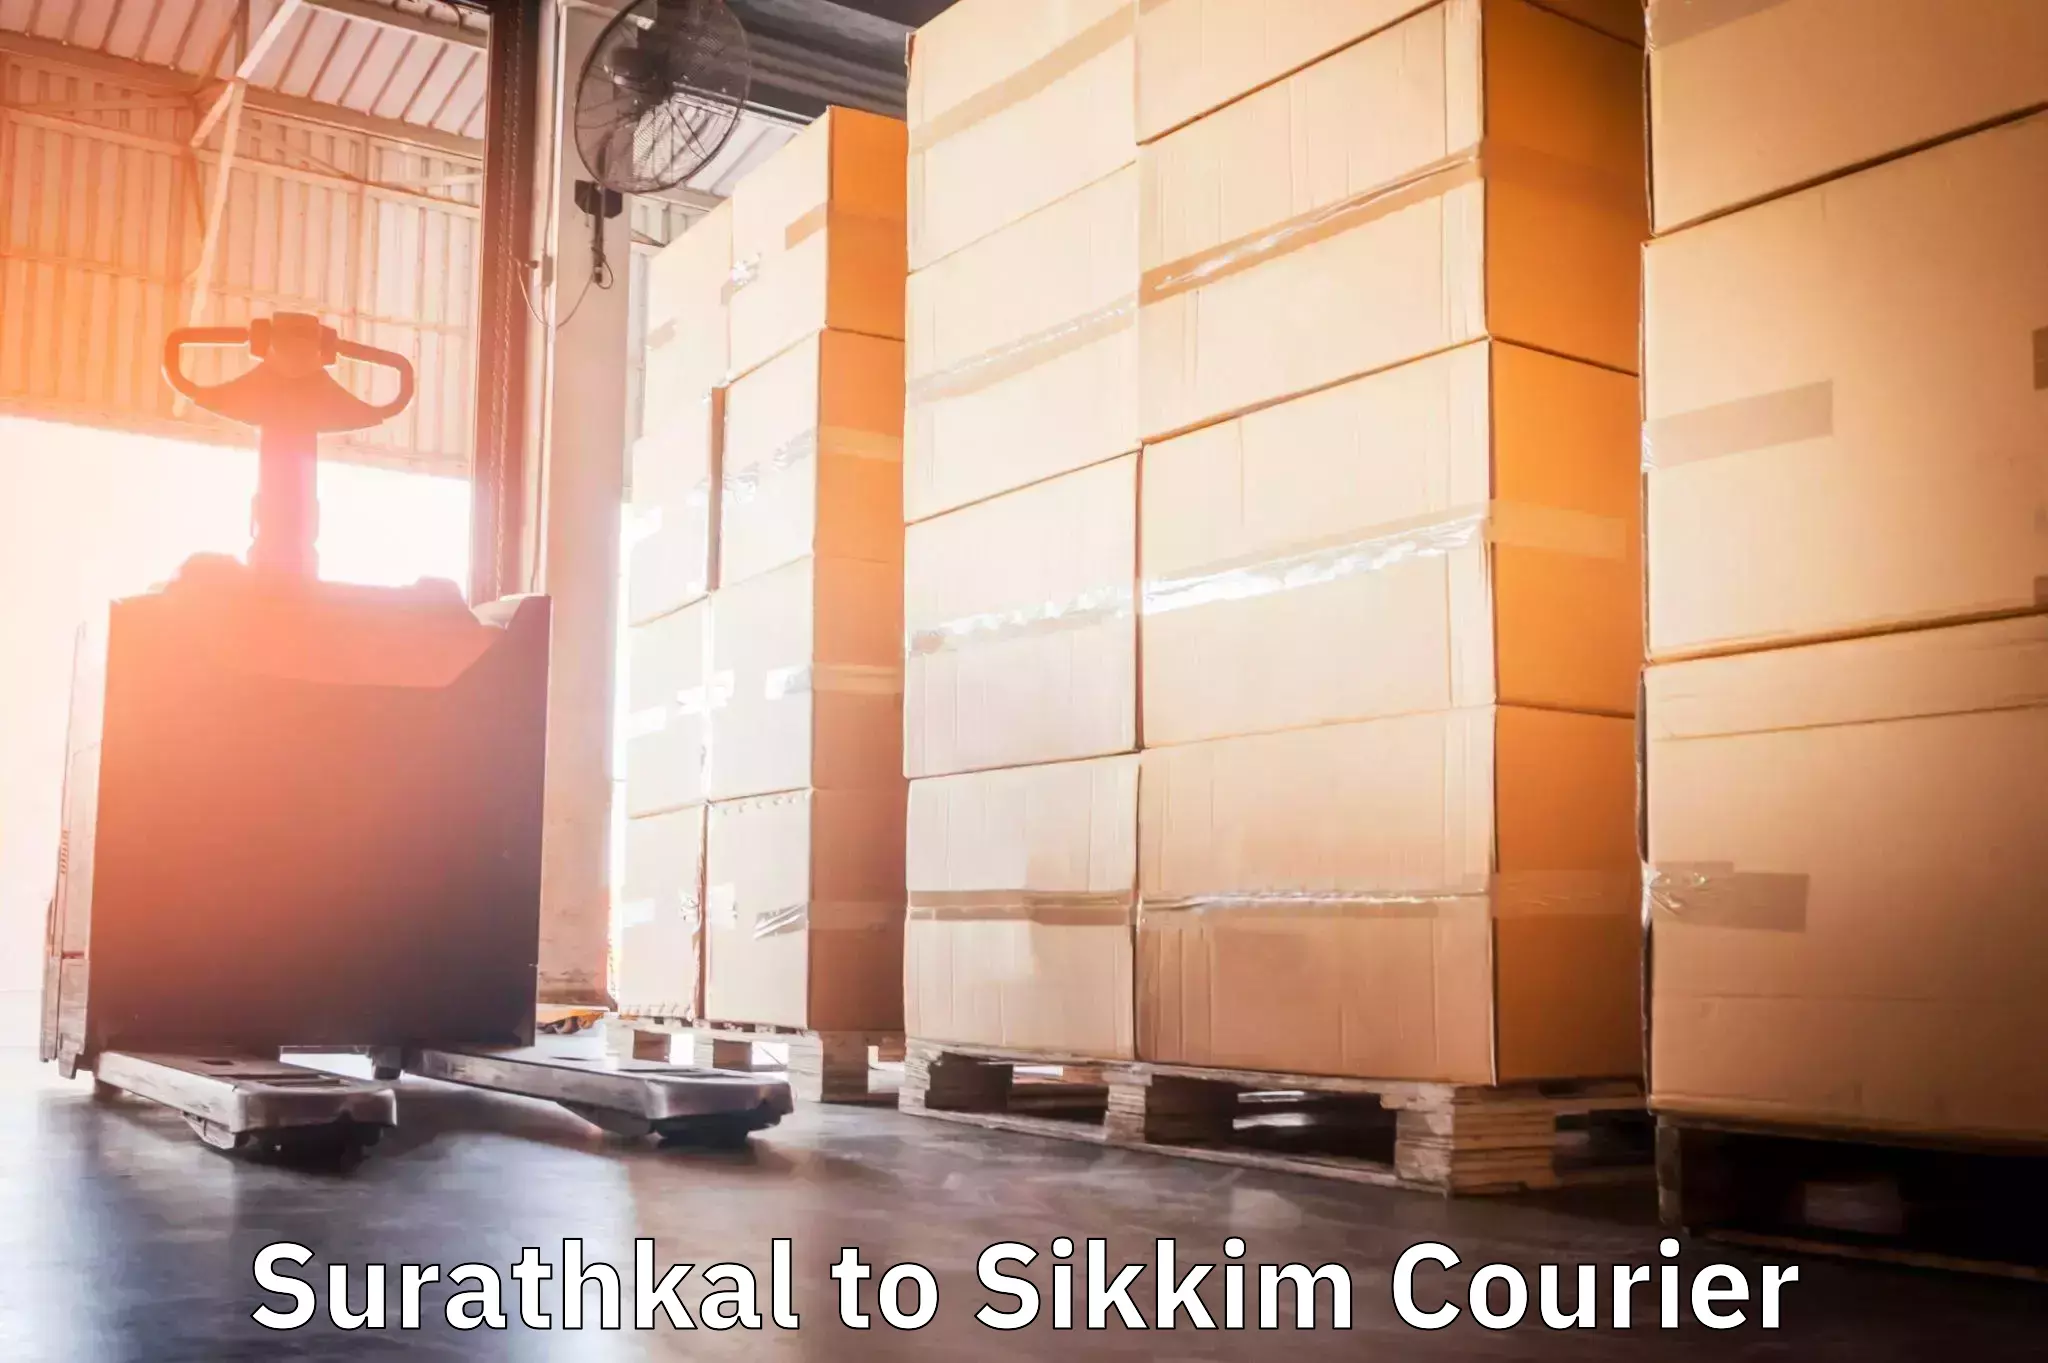 Door-to-door freight service Surathkal to South Sikkim